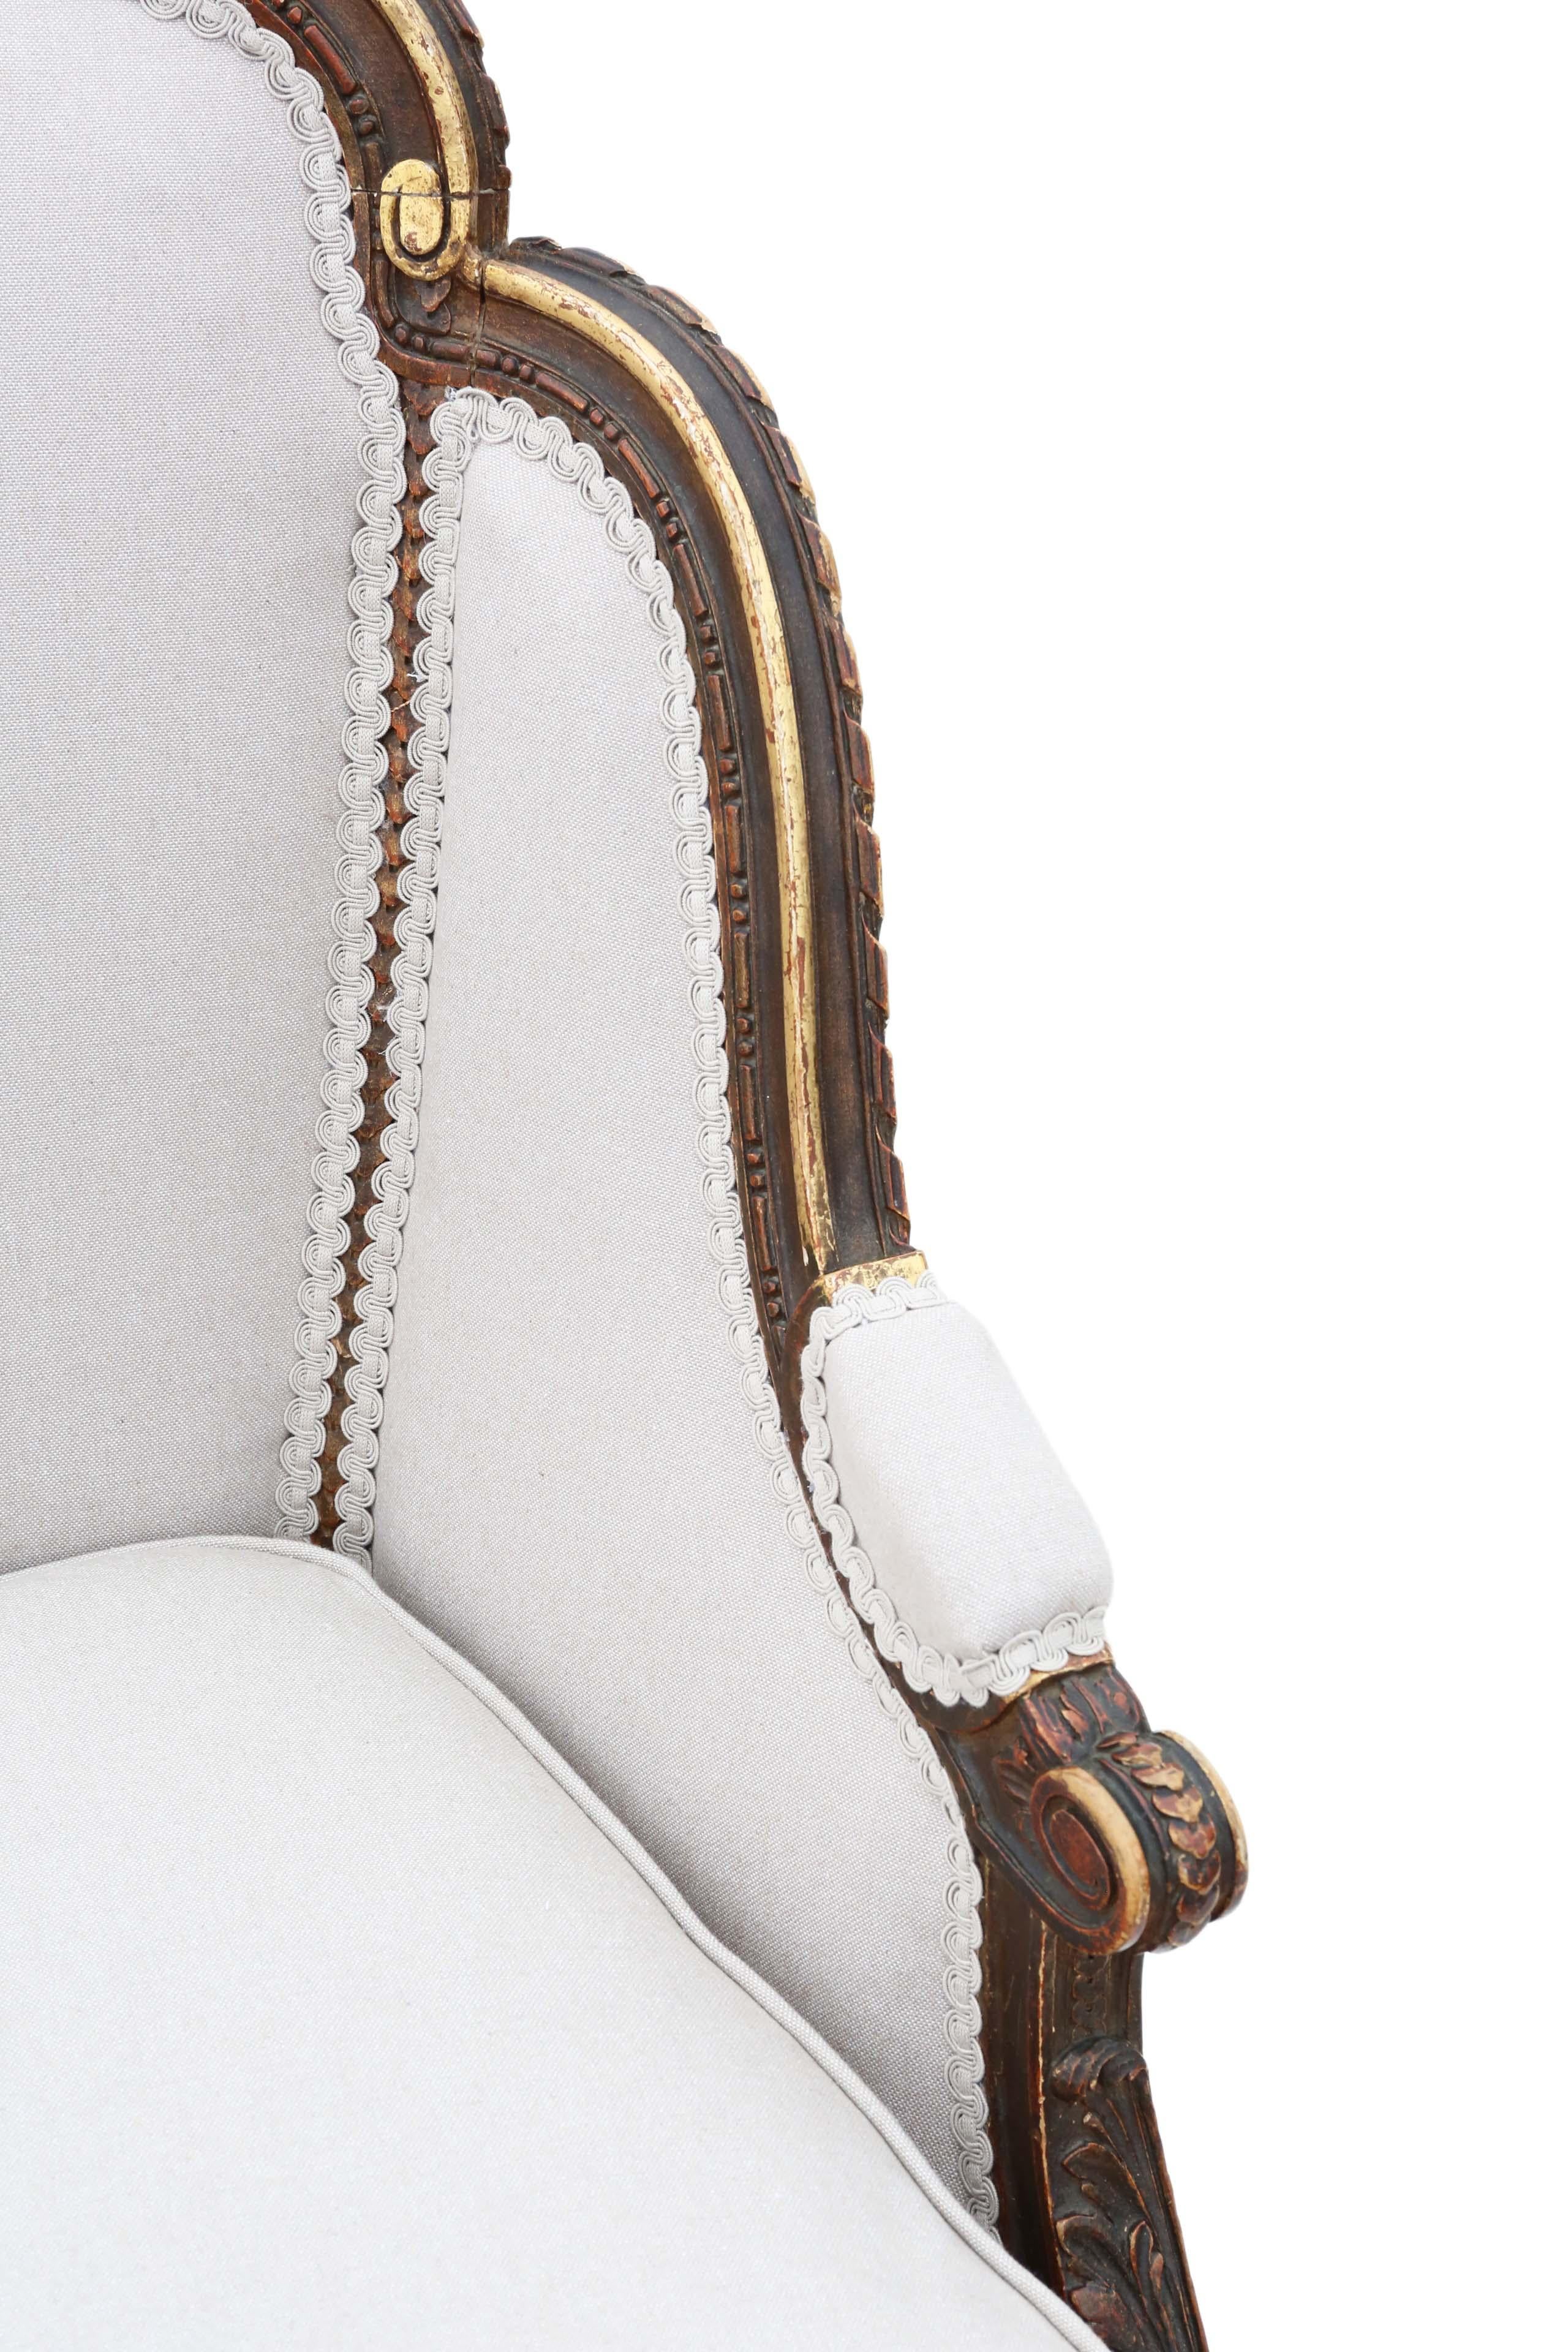 Antique Rare Gilt 19th Century Chair Armchair 4